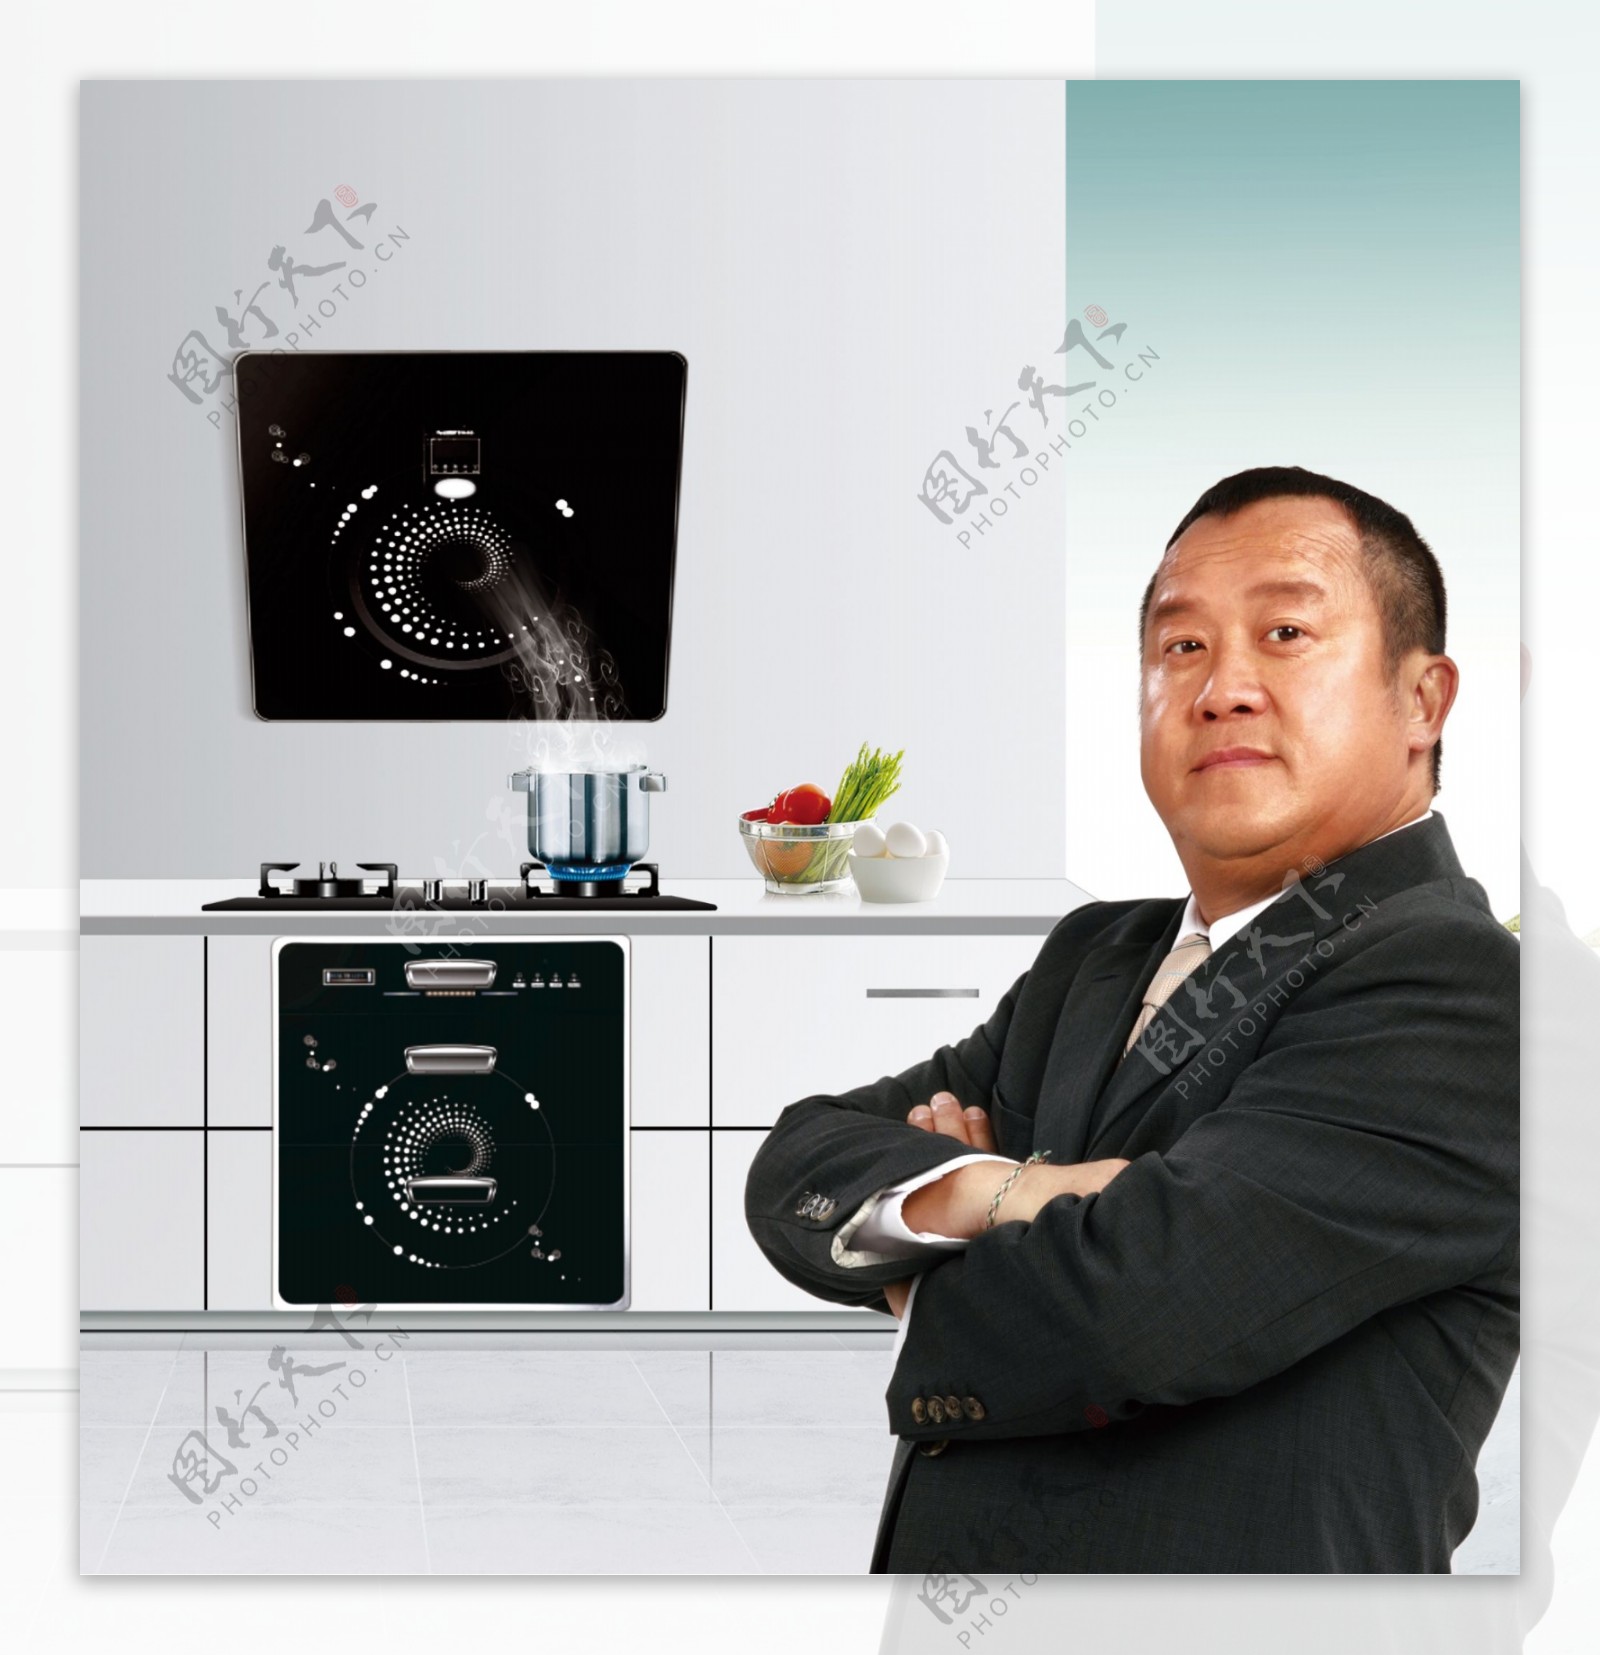 厨卫电器厨房效果图烟机灶具图片